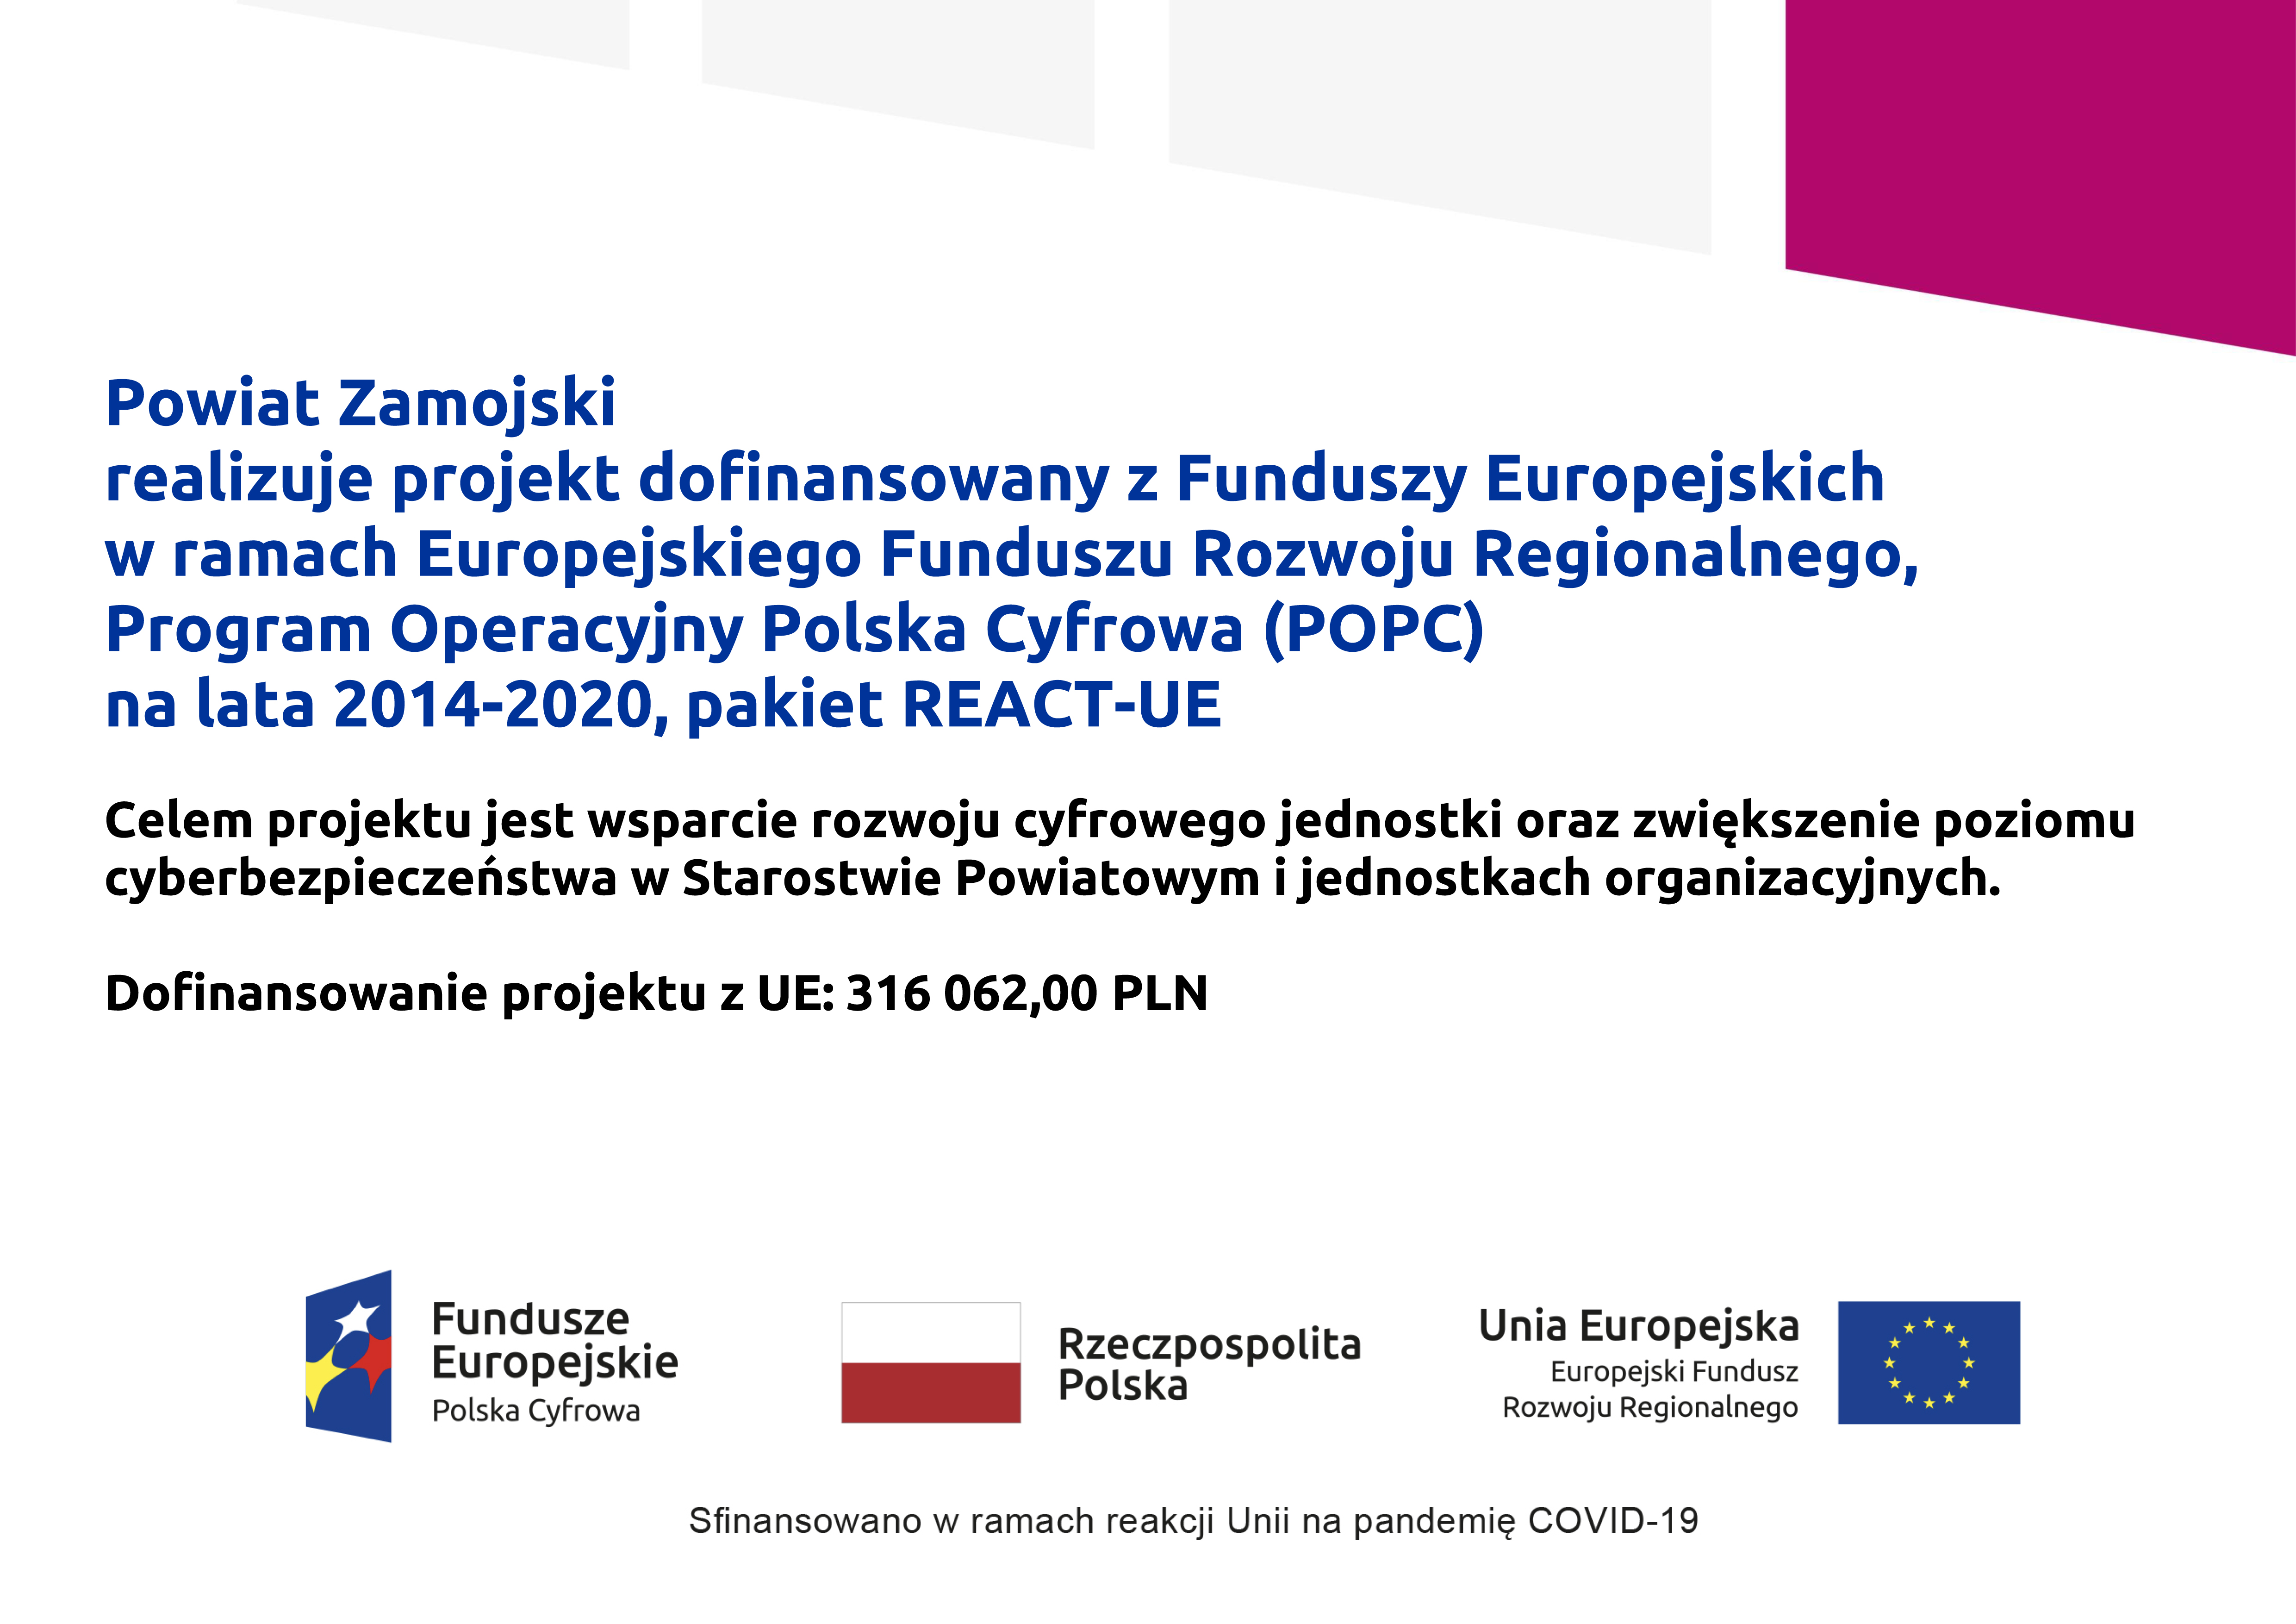 Program Operacyjny Polska Cyfrowa (POPC) na lata 2014-2020, pakiet REACT-UE